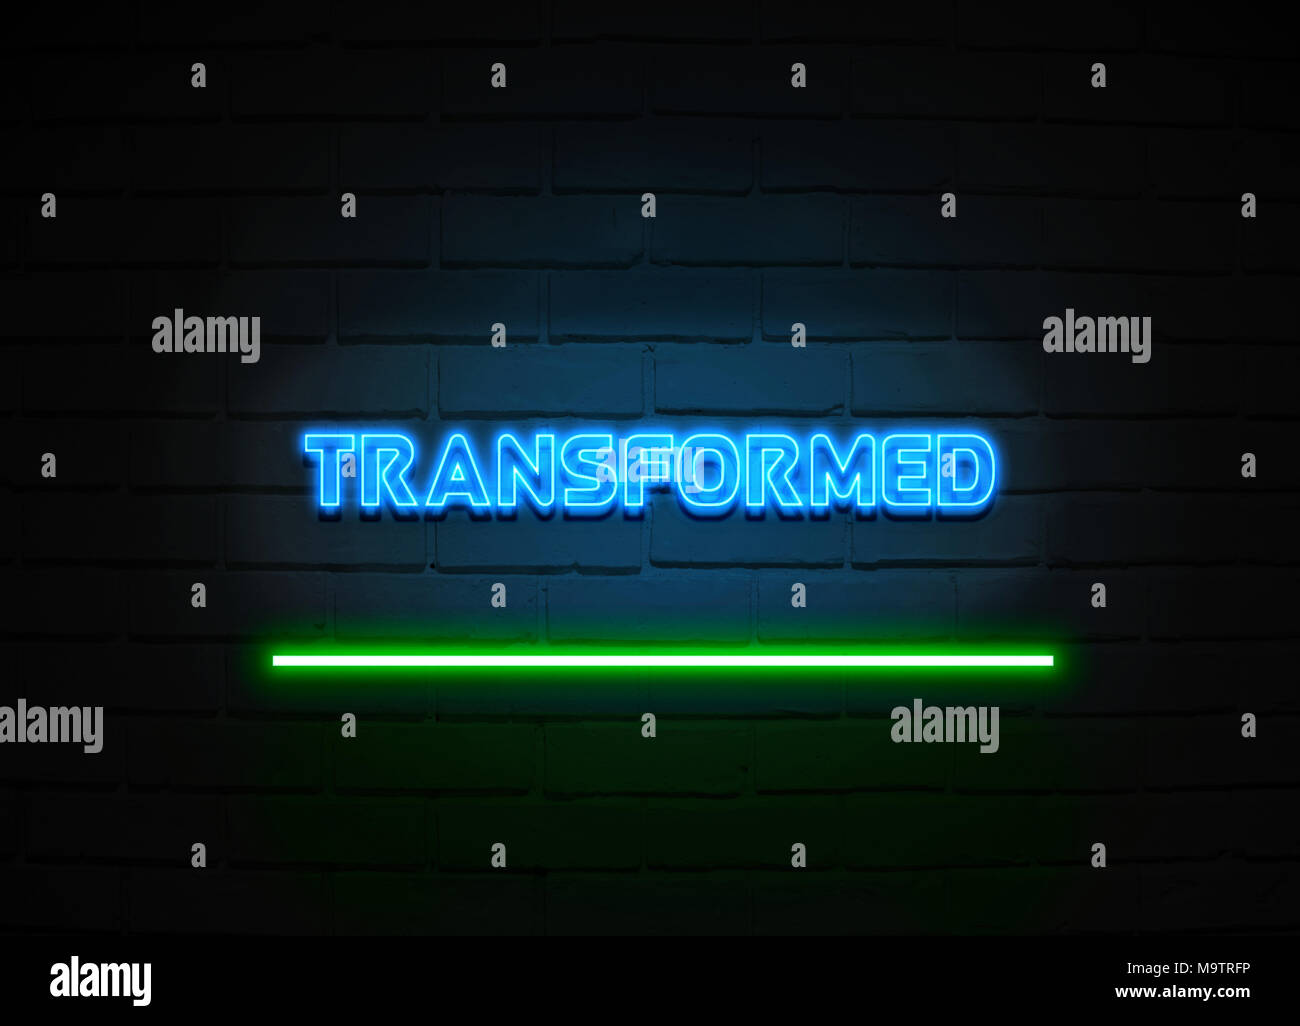 Transformiert Leuchtreklame - glühende Leuchtreklame auf brickwall Wand - 3D-Royalty Free Stock Illustration dargestellt. Stockfoto